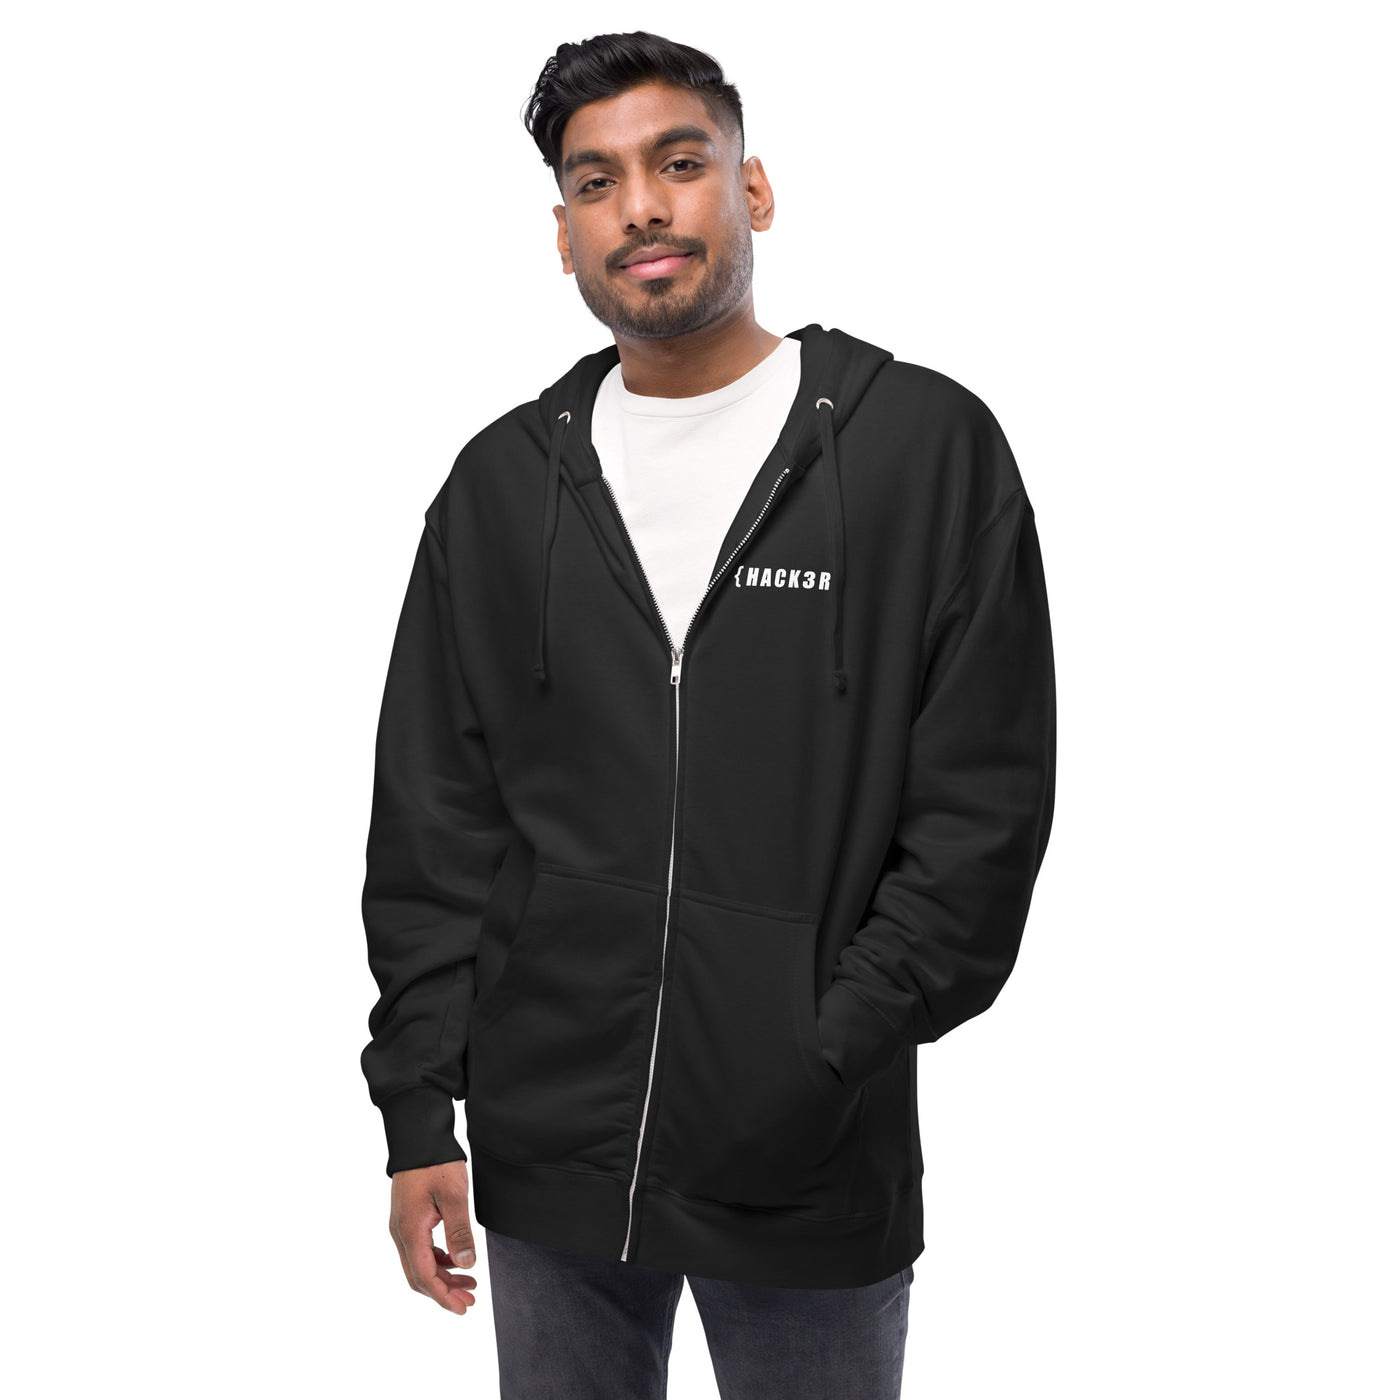 Hack3r - Unisex fleece zip up hoodie